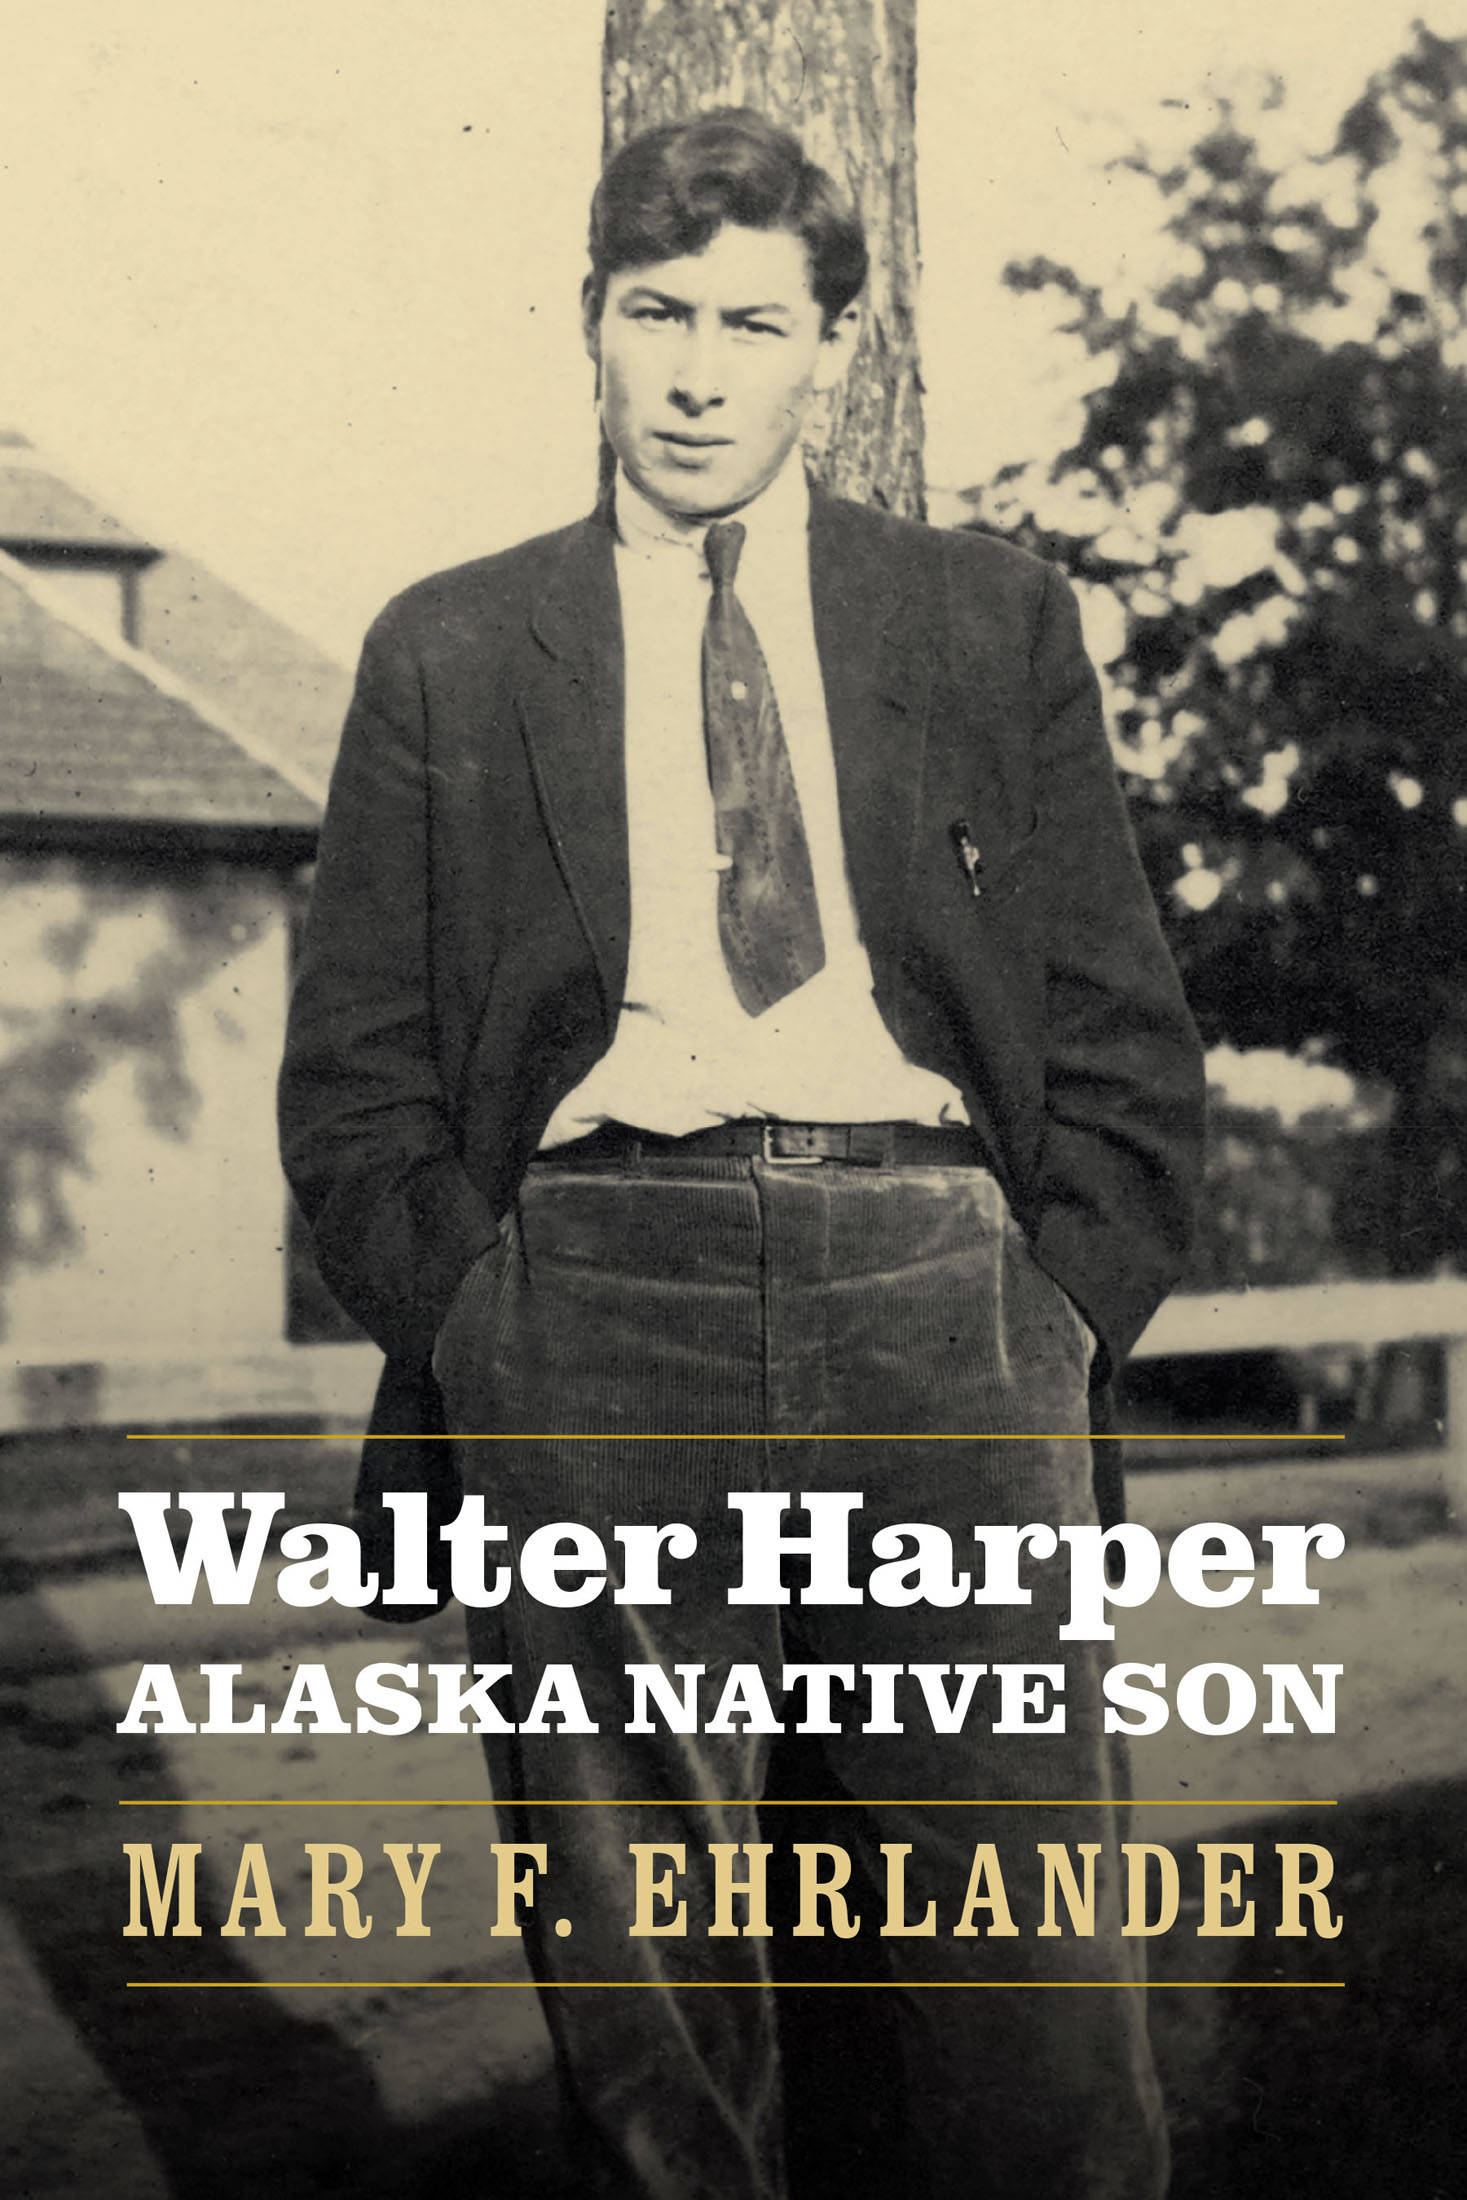 The cover of “Walter Harper: Alaska Native Son.” Courtesy of University of Nebraska Press.